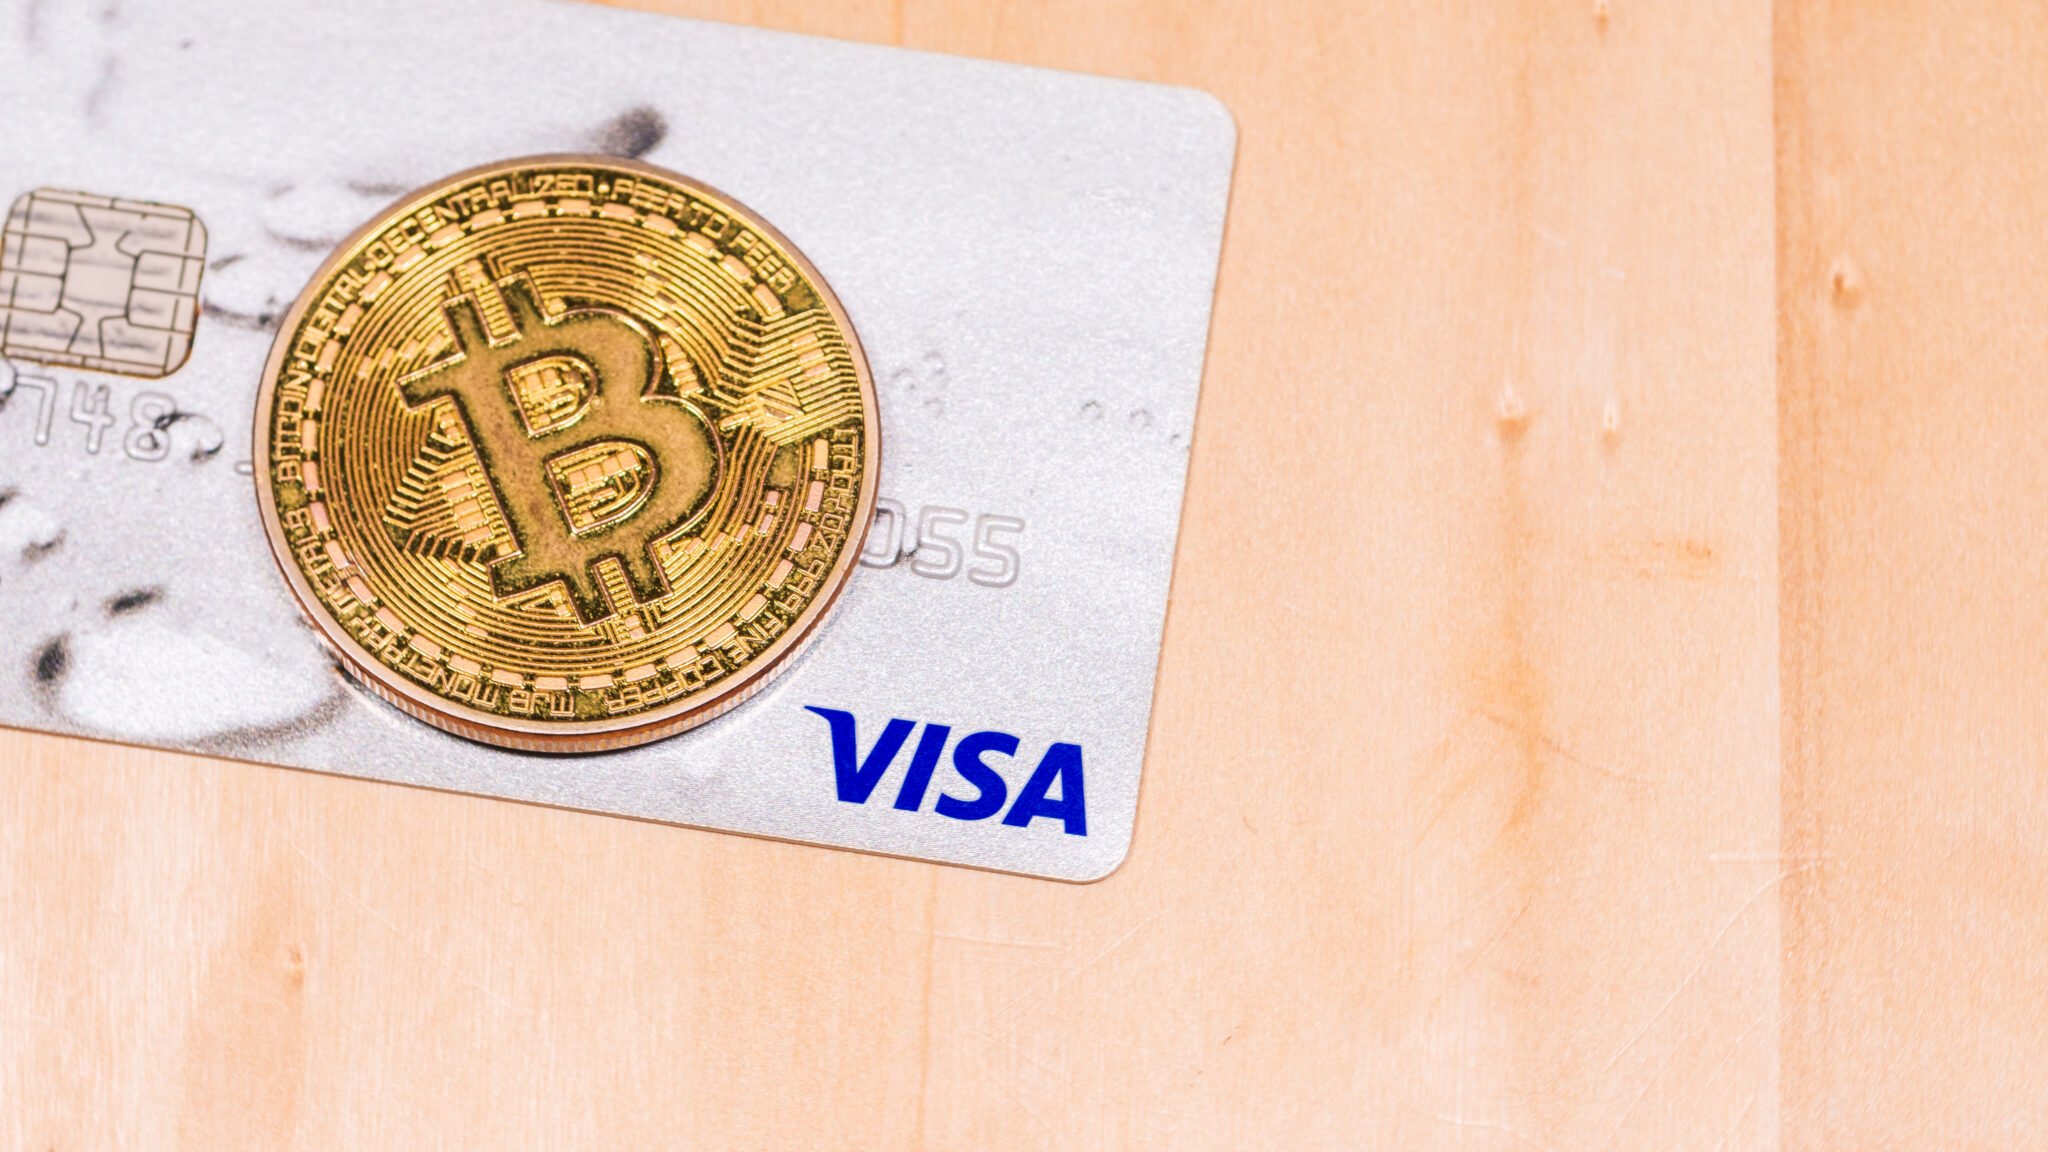 Bitcoin coin and Visa credit card